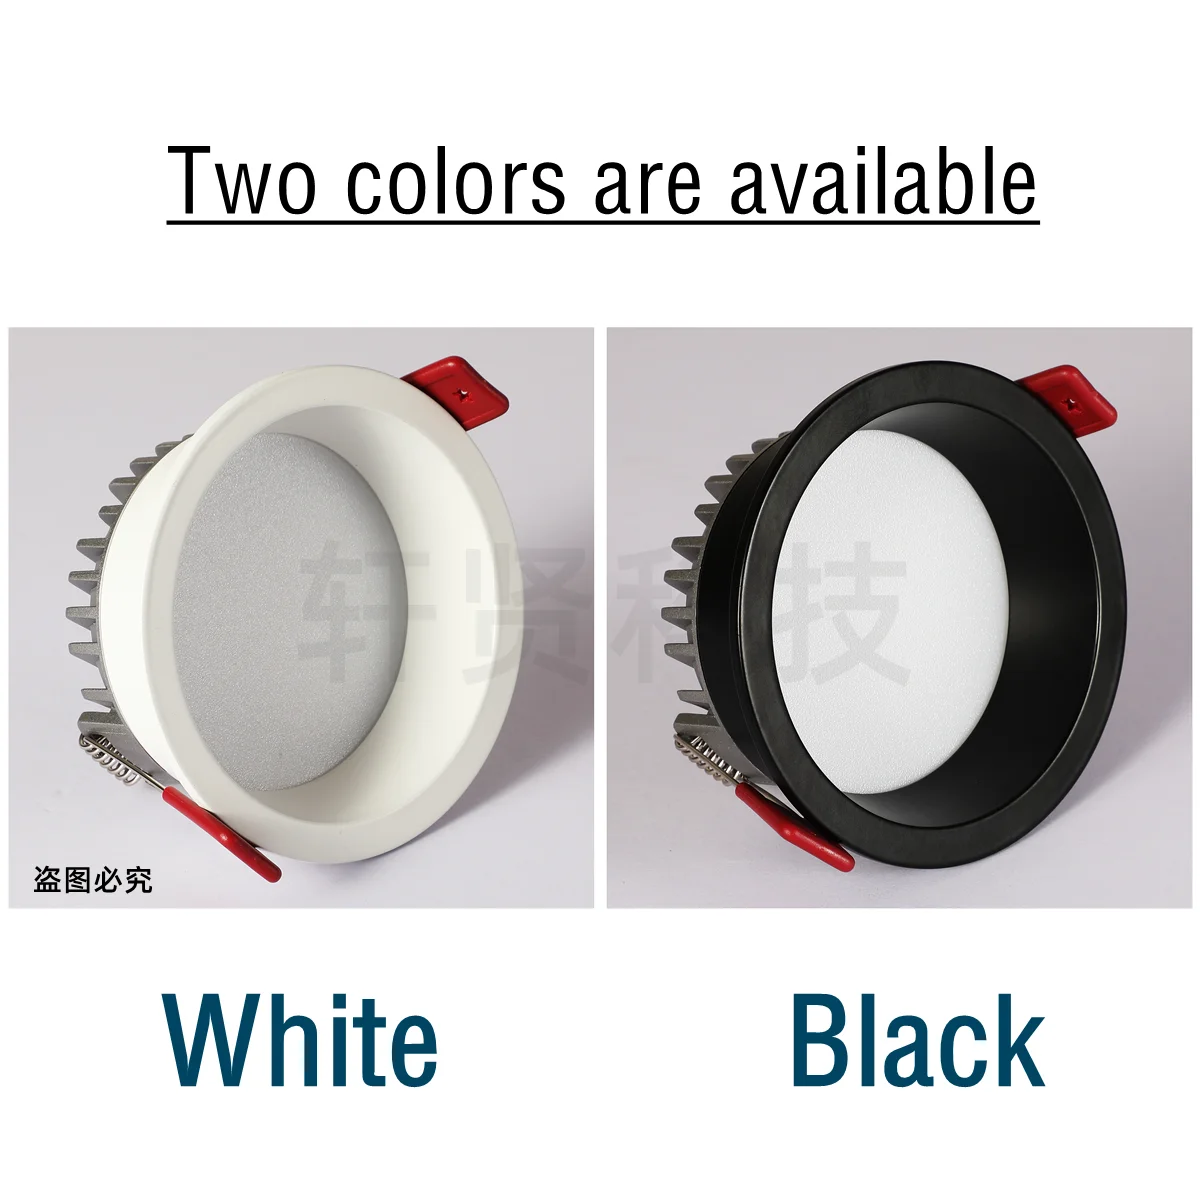 S0860e79e62e94dccb1bf9ea67e8d017fg Recessed LED Downlight Anti-glare Black/White Dimmable LED Ceiling Light Bedroom Kitchen Tri-color Light LED Spotlight